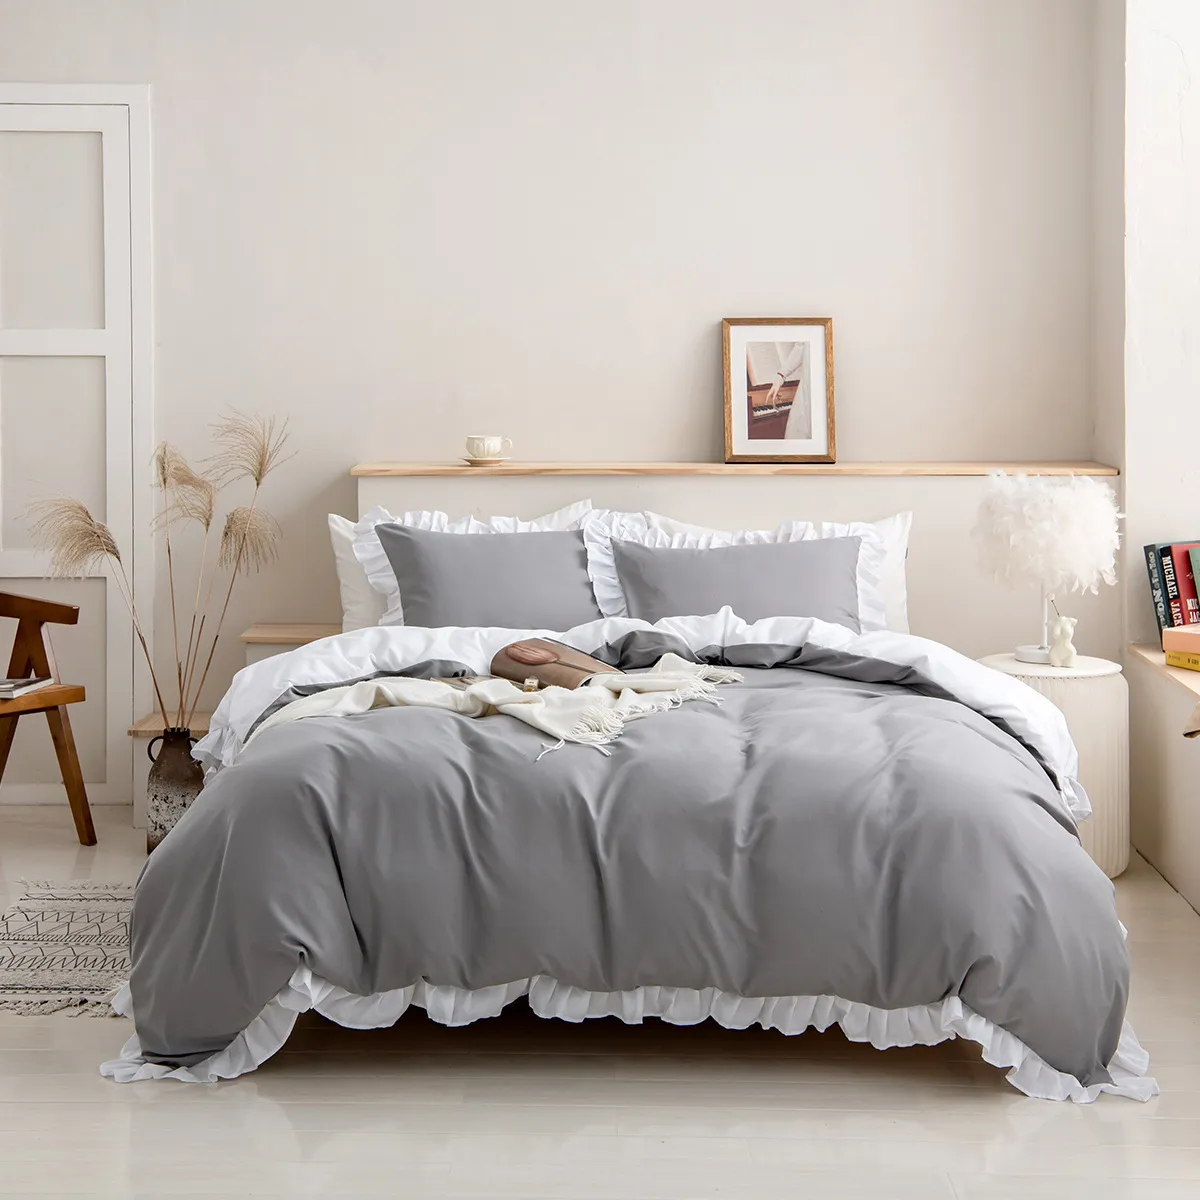 2/3 piezas de juego de cama de color sólido suave y cómodo, que incluye funda nórdica y fundas de almohada Gris big image 1